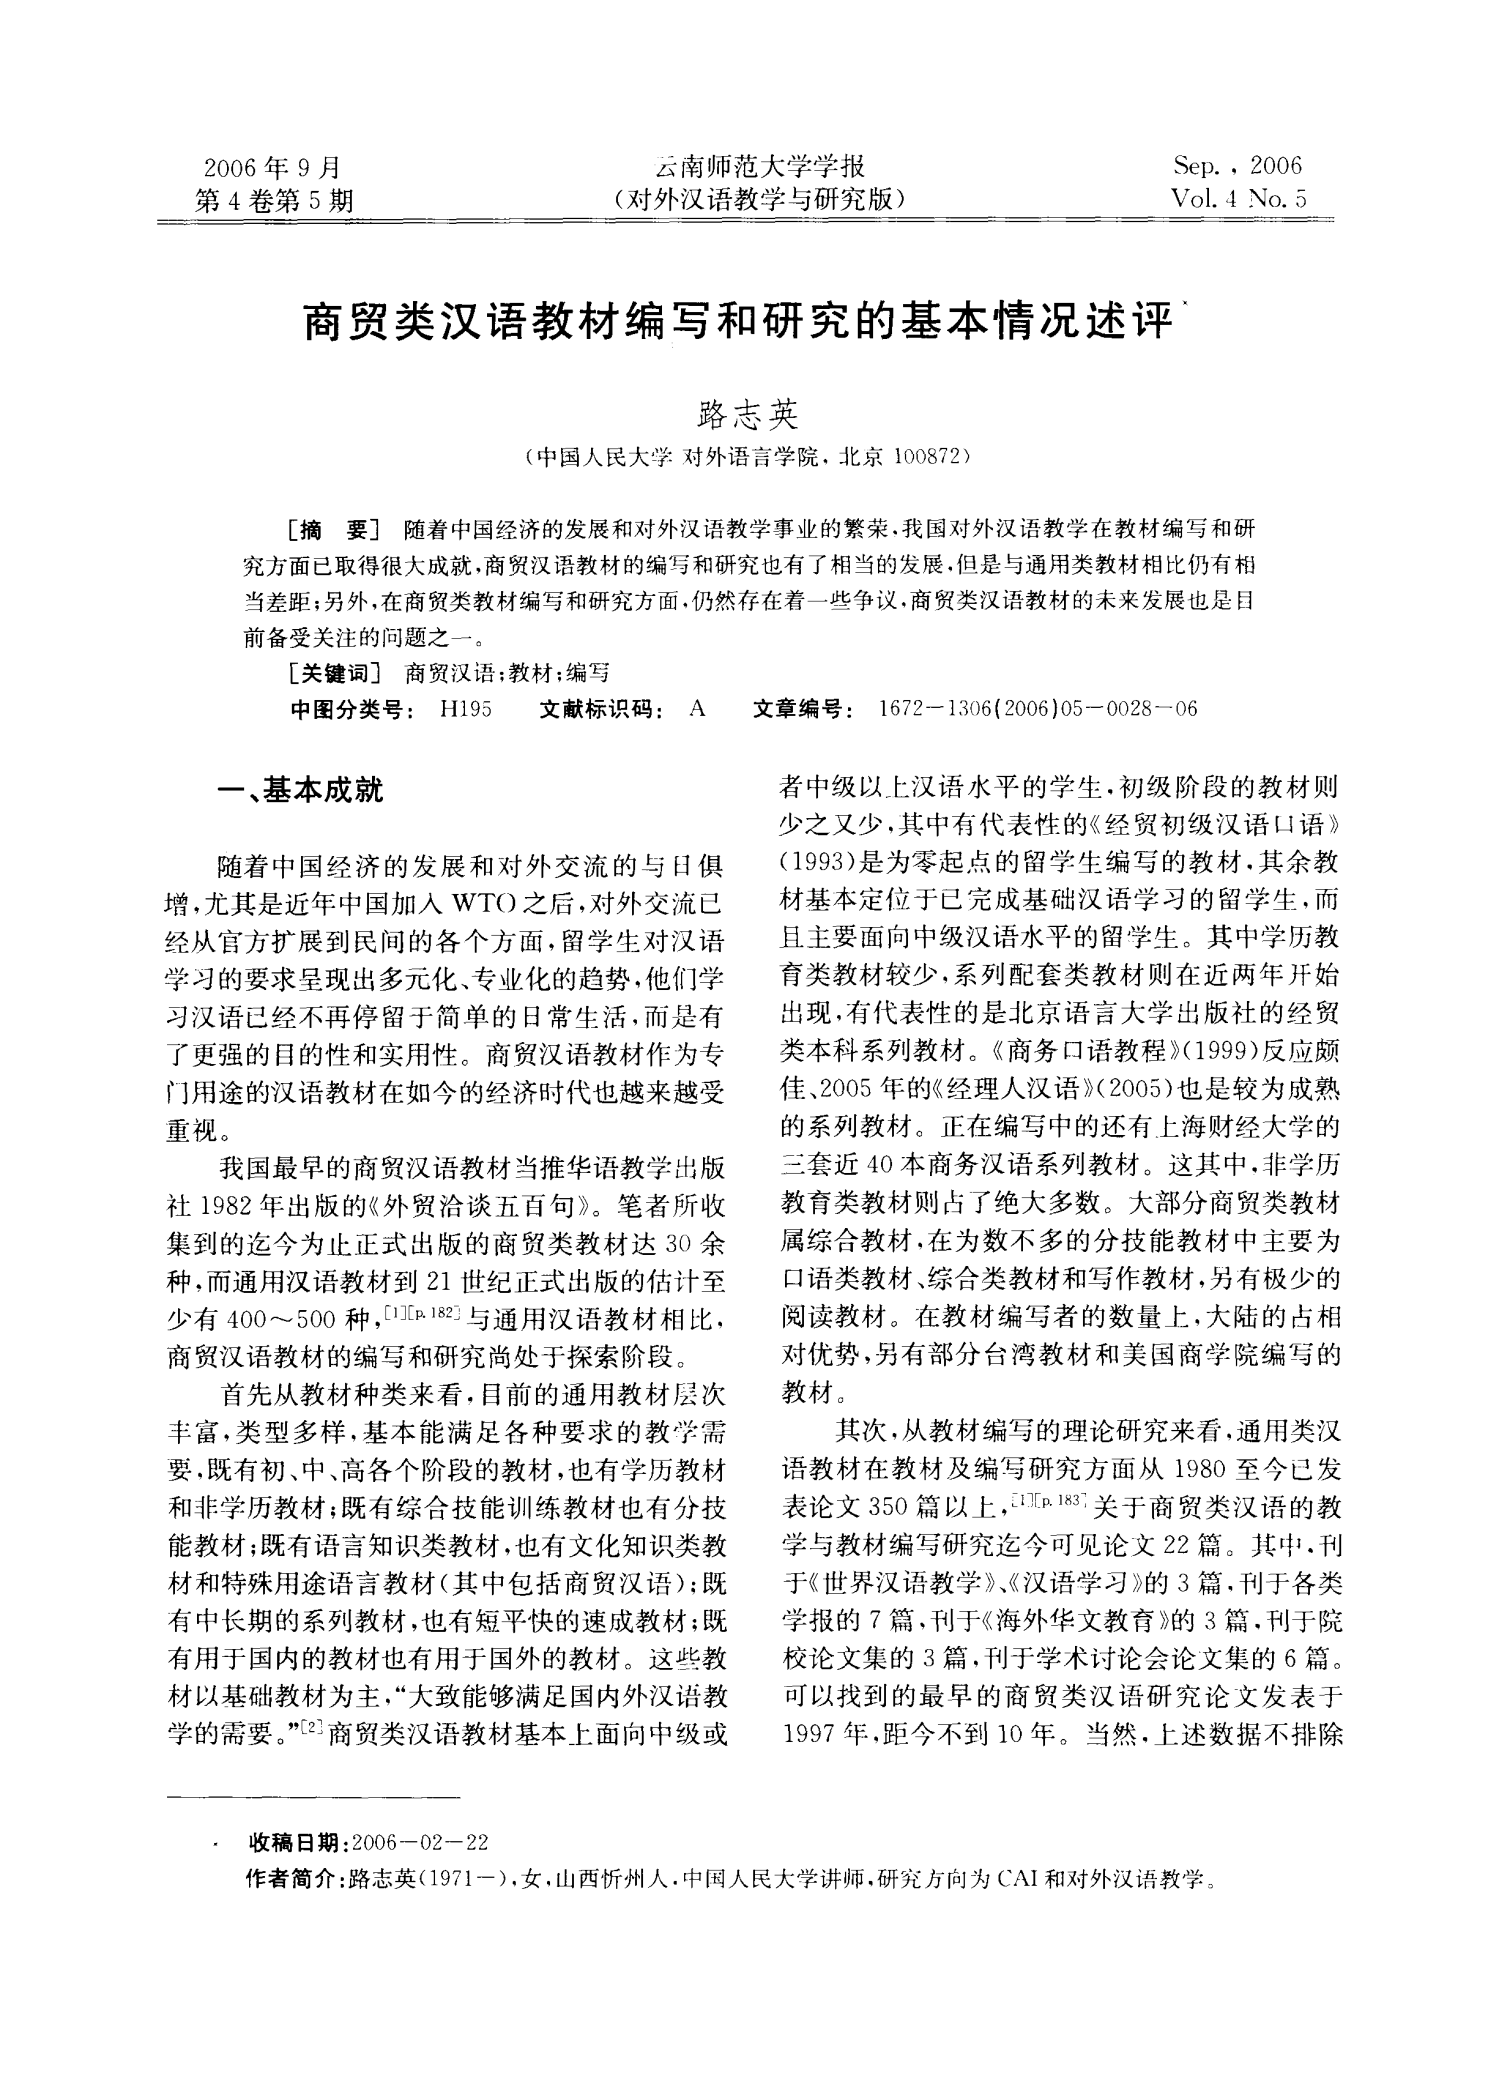 商贸类汉语教材编写和研究的基本情况述评